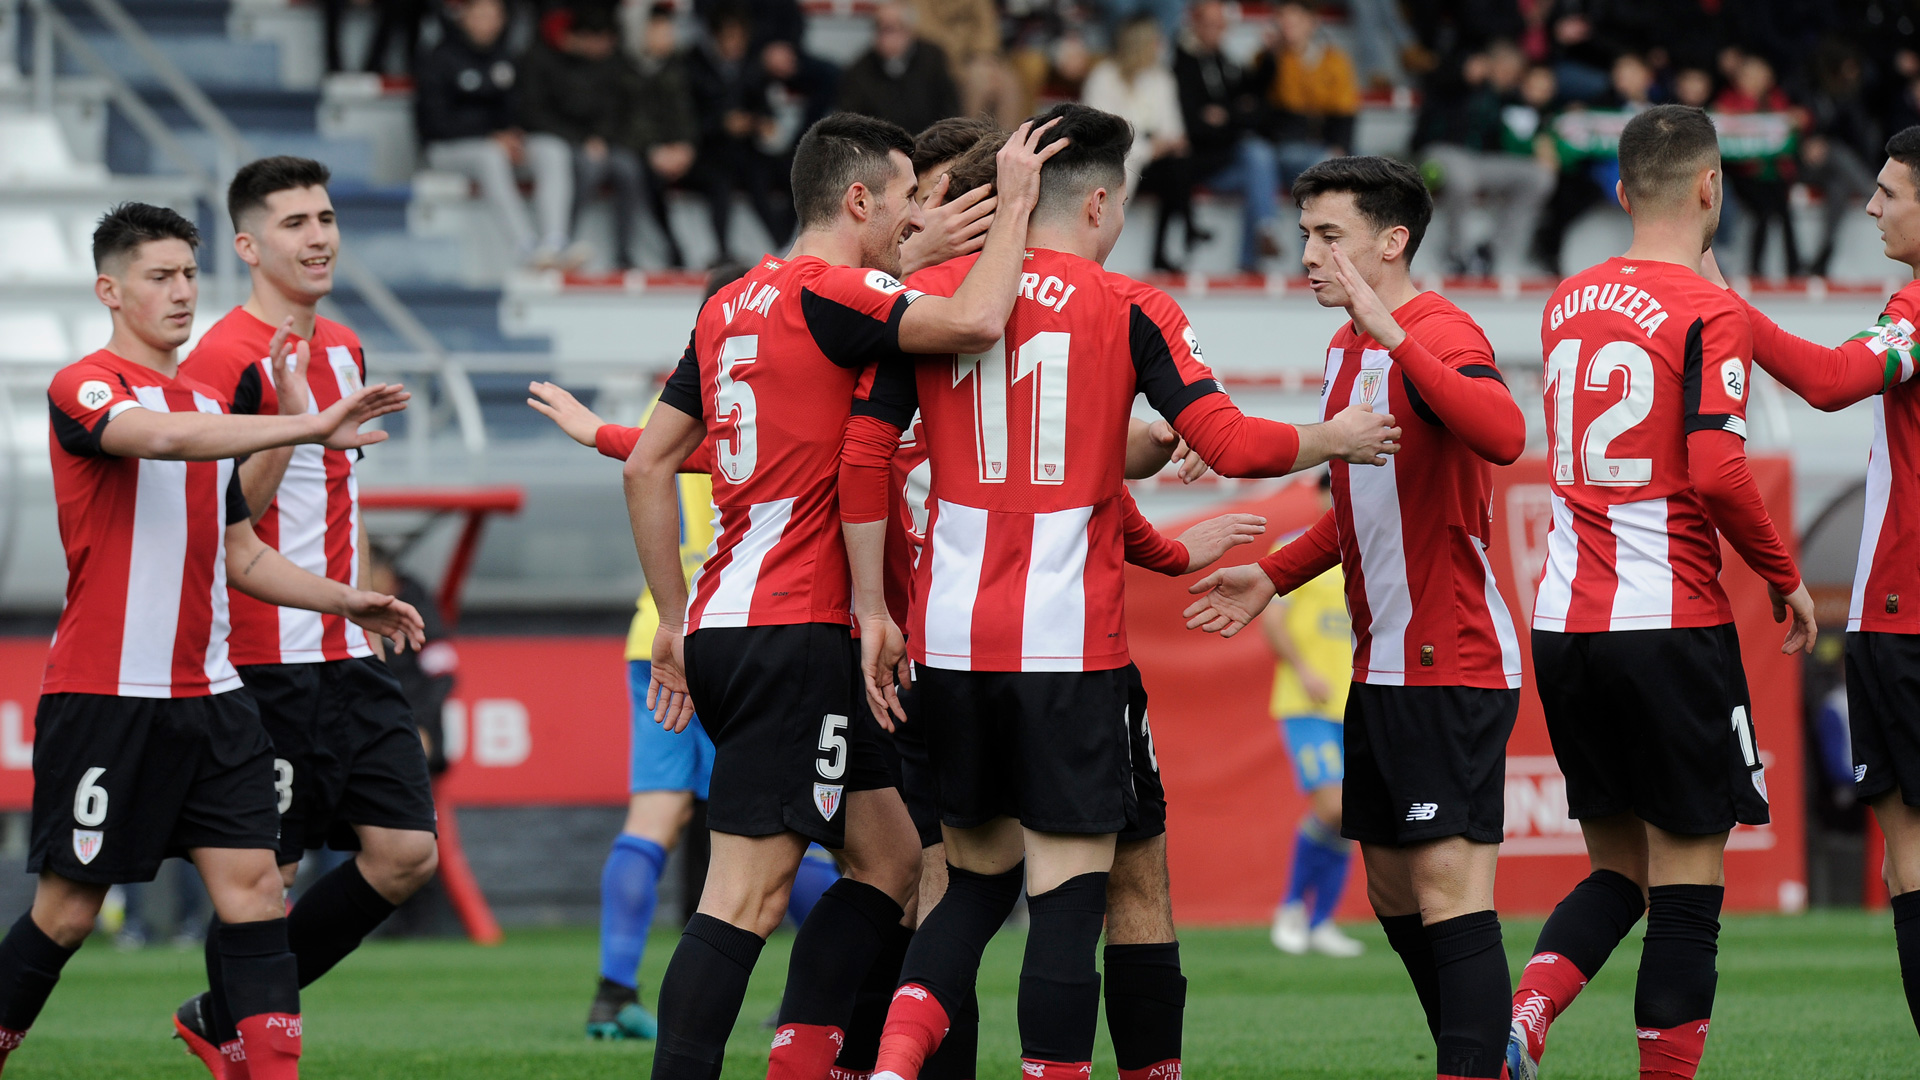 Kết quả trung cuộc của trận đấu: Bilbao cầm hòa Atletico với tỷ số 0-0